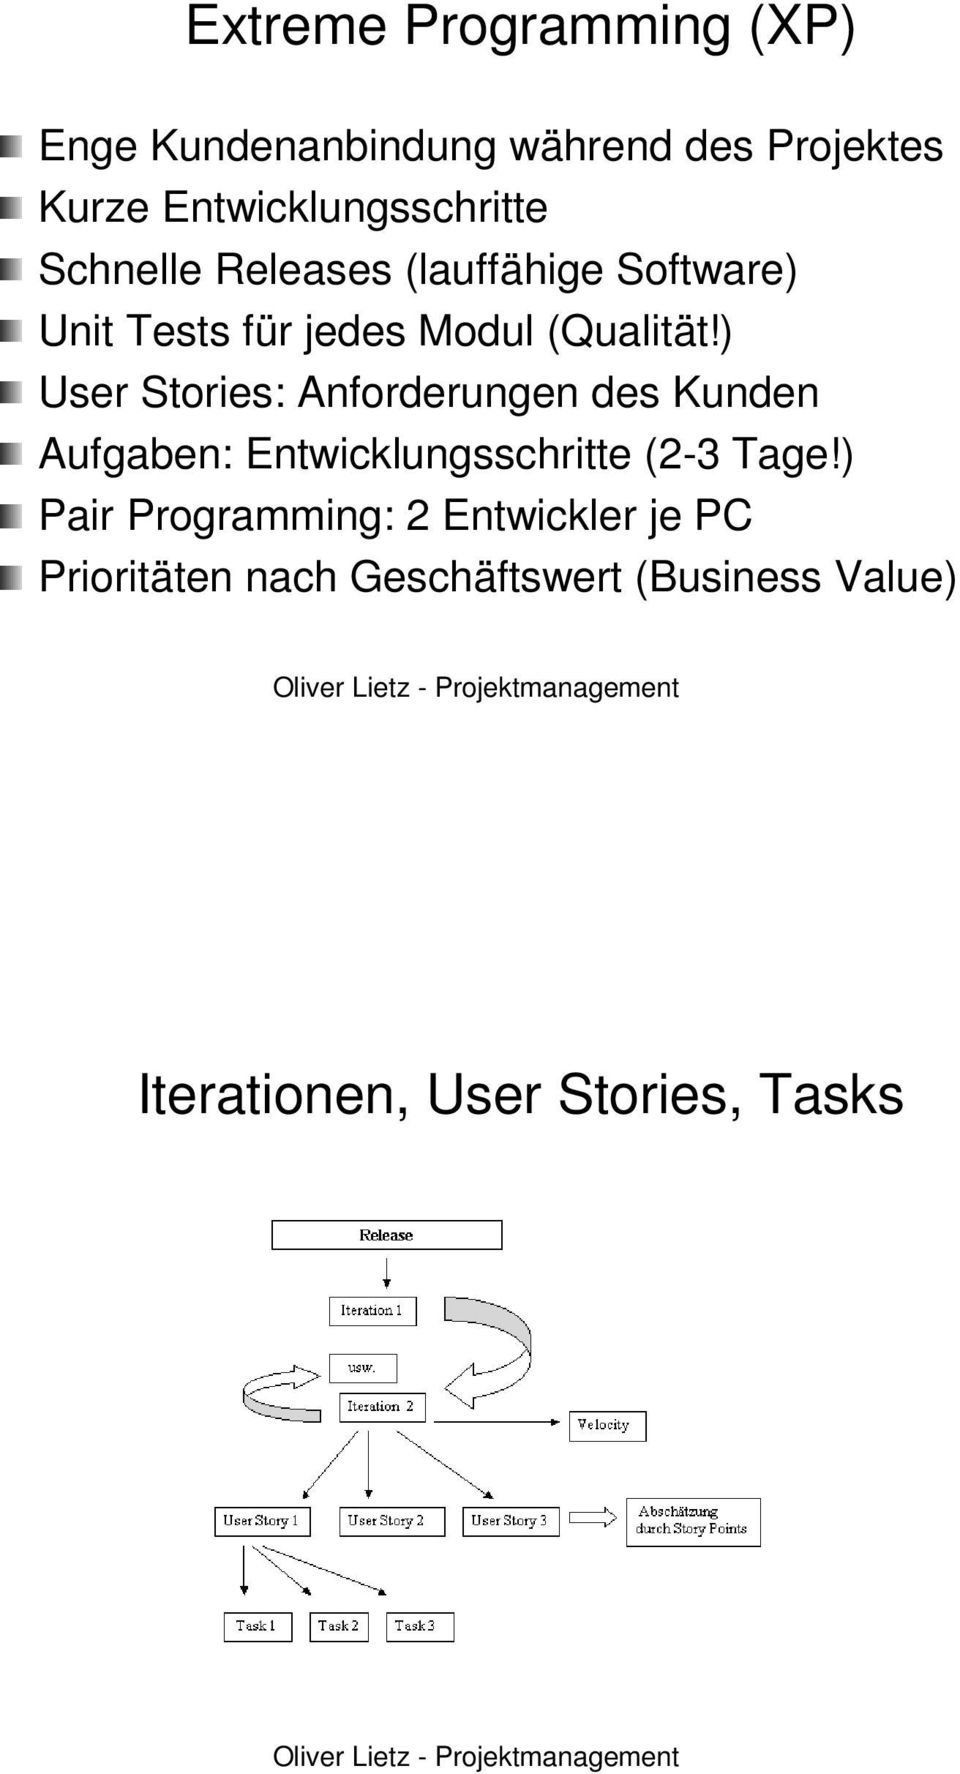 ) User Stories: : Anforderungen des Kunden Aufgaben: Entwicklungsschritte (2-3 3 Tage!